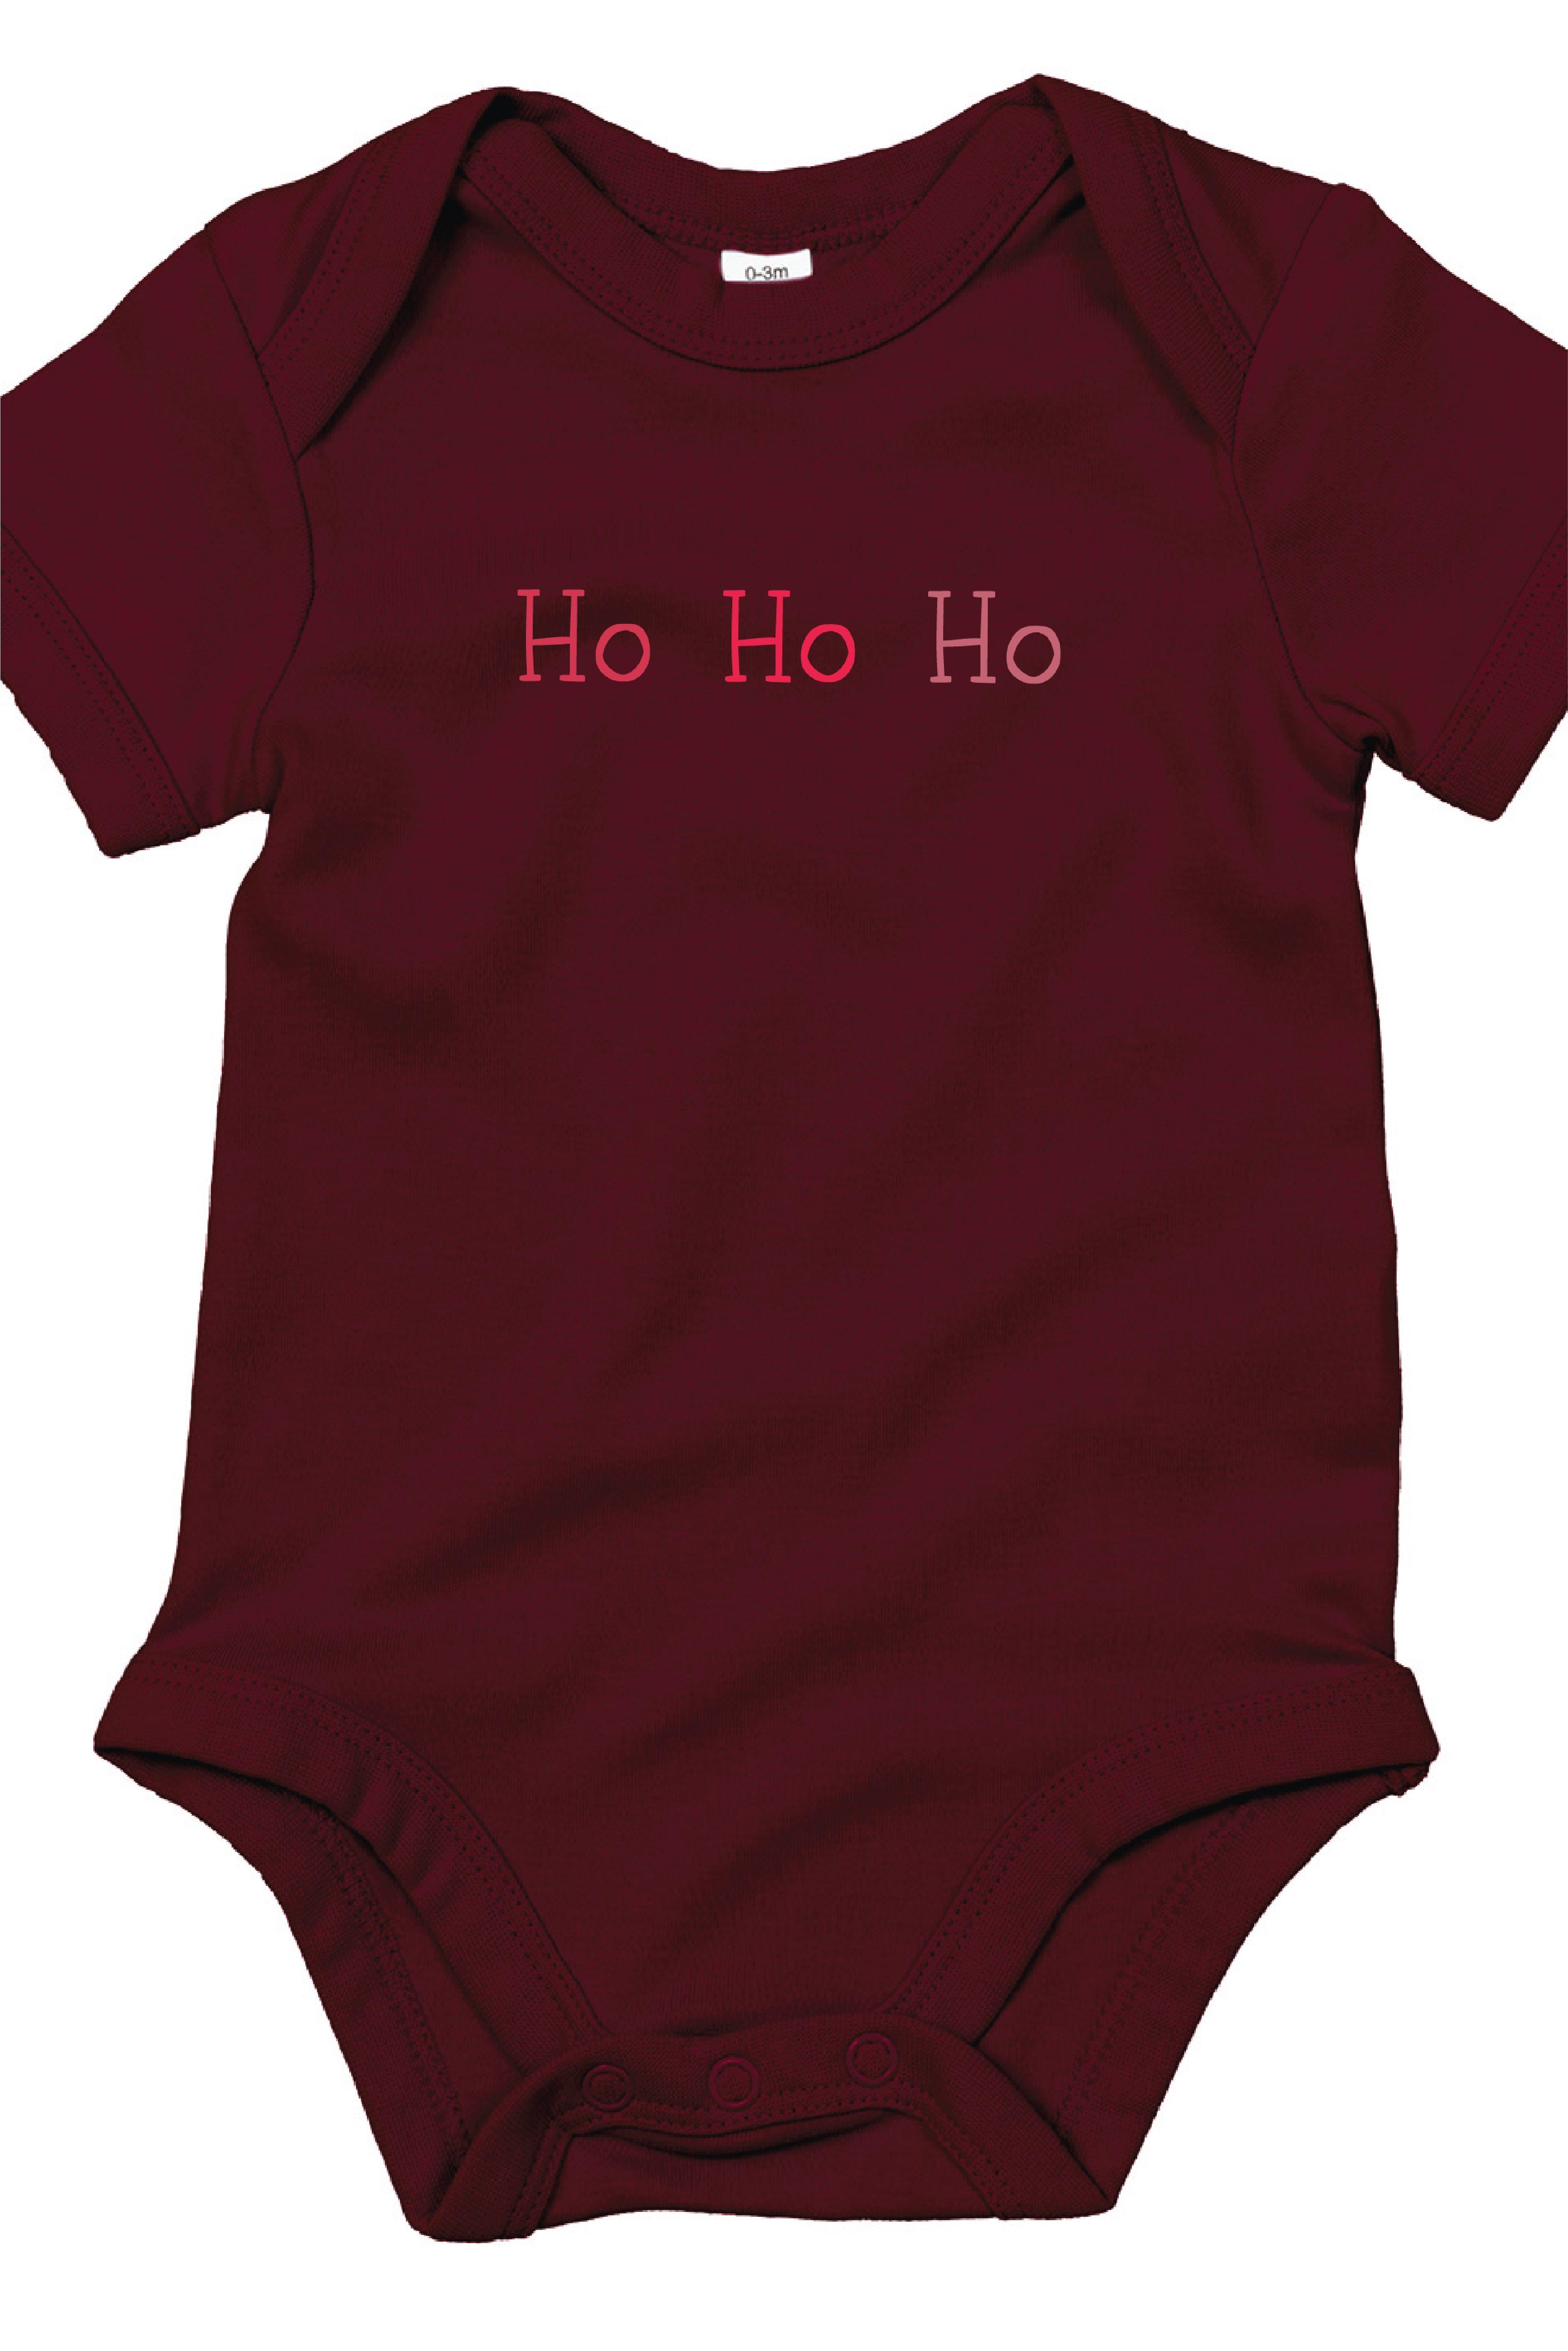 Ho Ho Ho Baby Vest